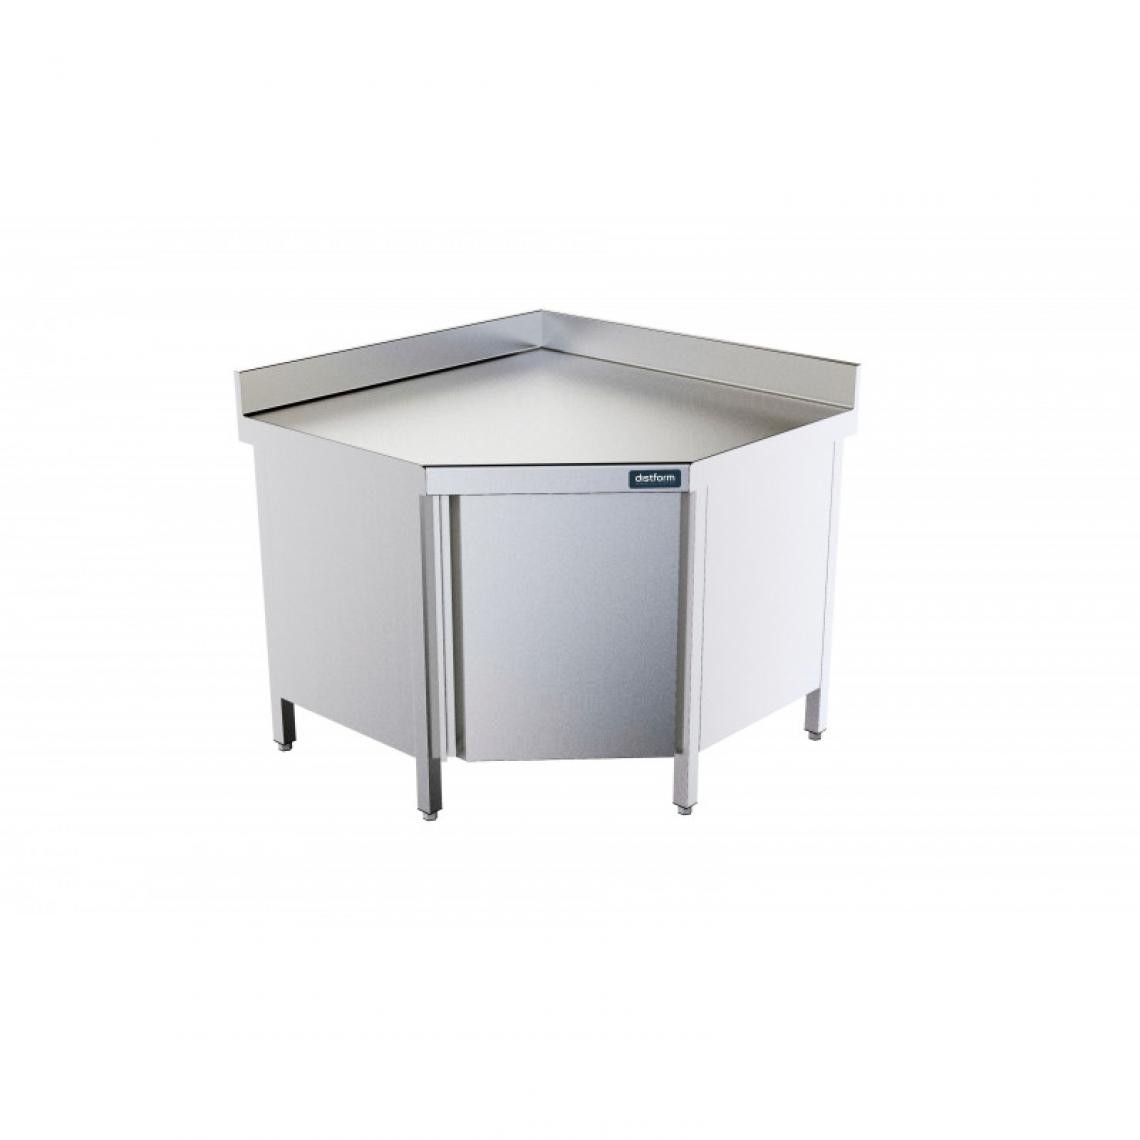 DISTFORM - Table d'Angle 1000x1000mm avec Porte et Dosseret - Distform - Acier inoxydable1000x1000x600 - Tables à manger